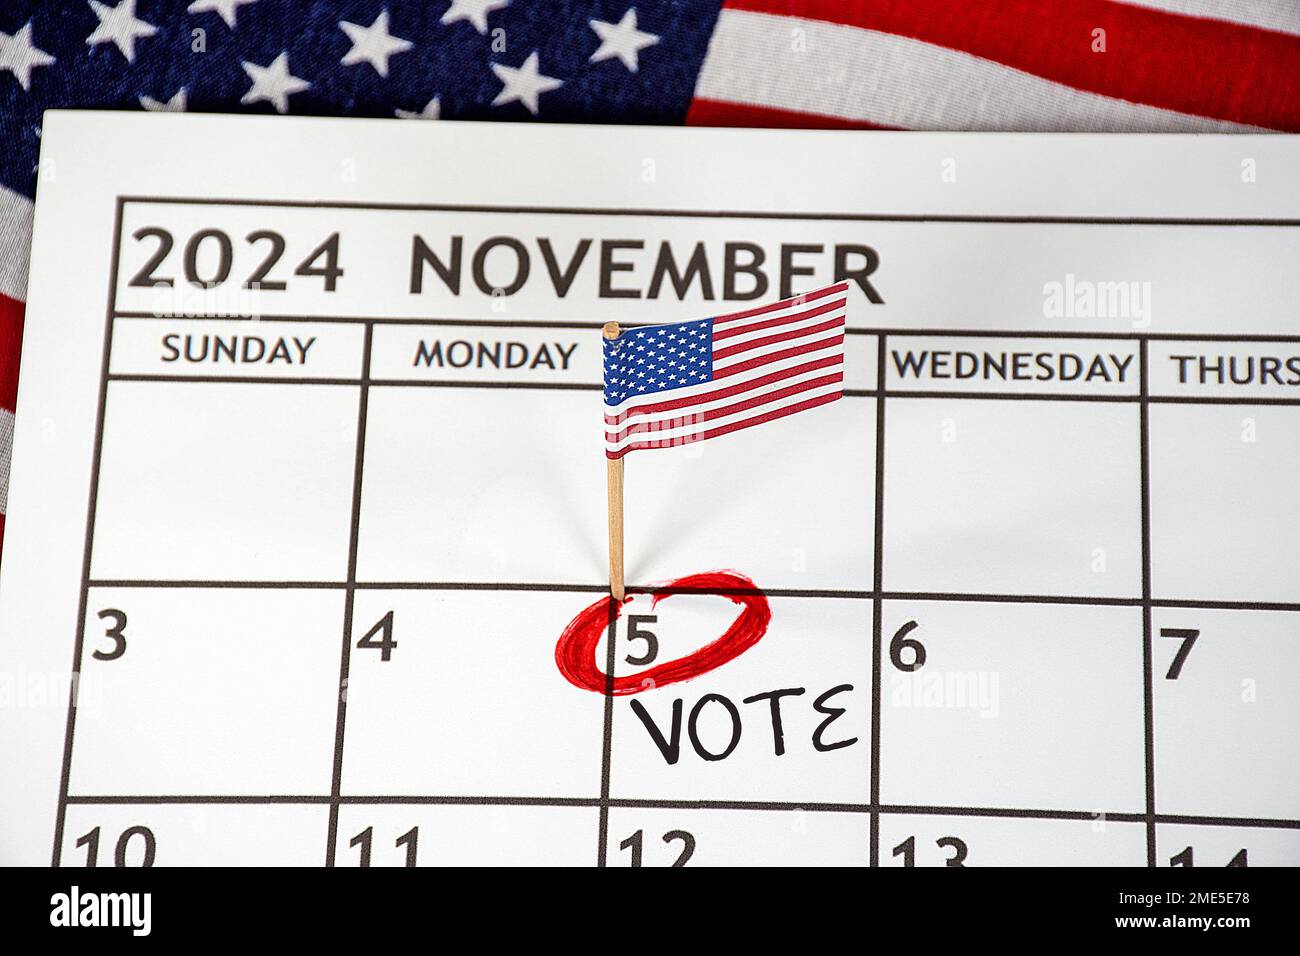 Drapeau américain et cercle rouge le jour de l'élection présidentielle de 5 novembre 2024 Banque D'Images